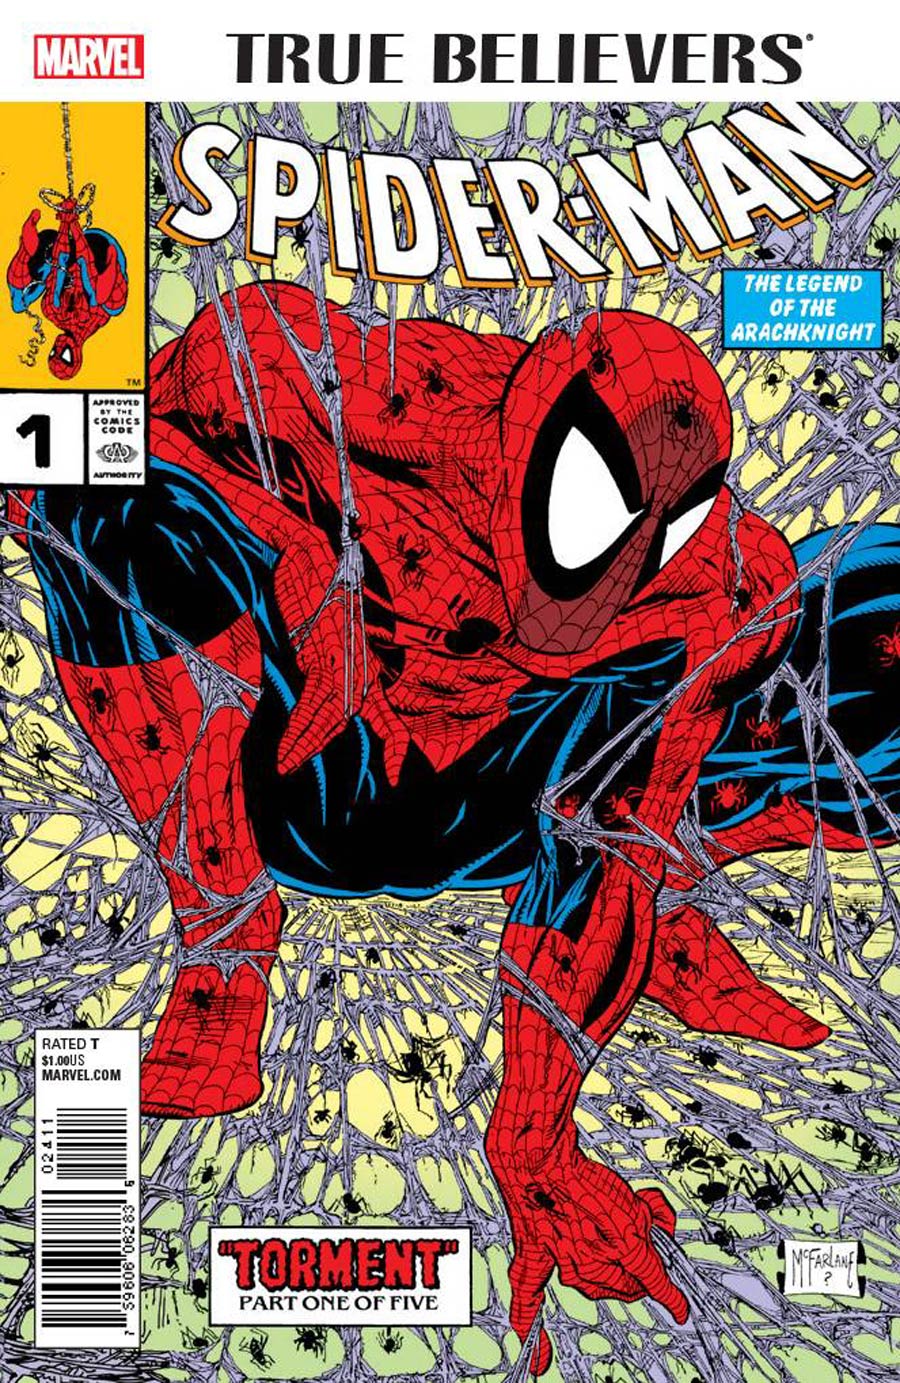 True Believers Spider-Man #1